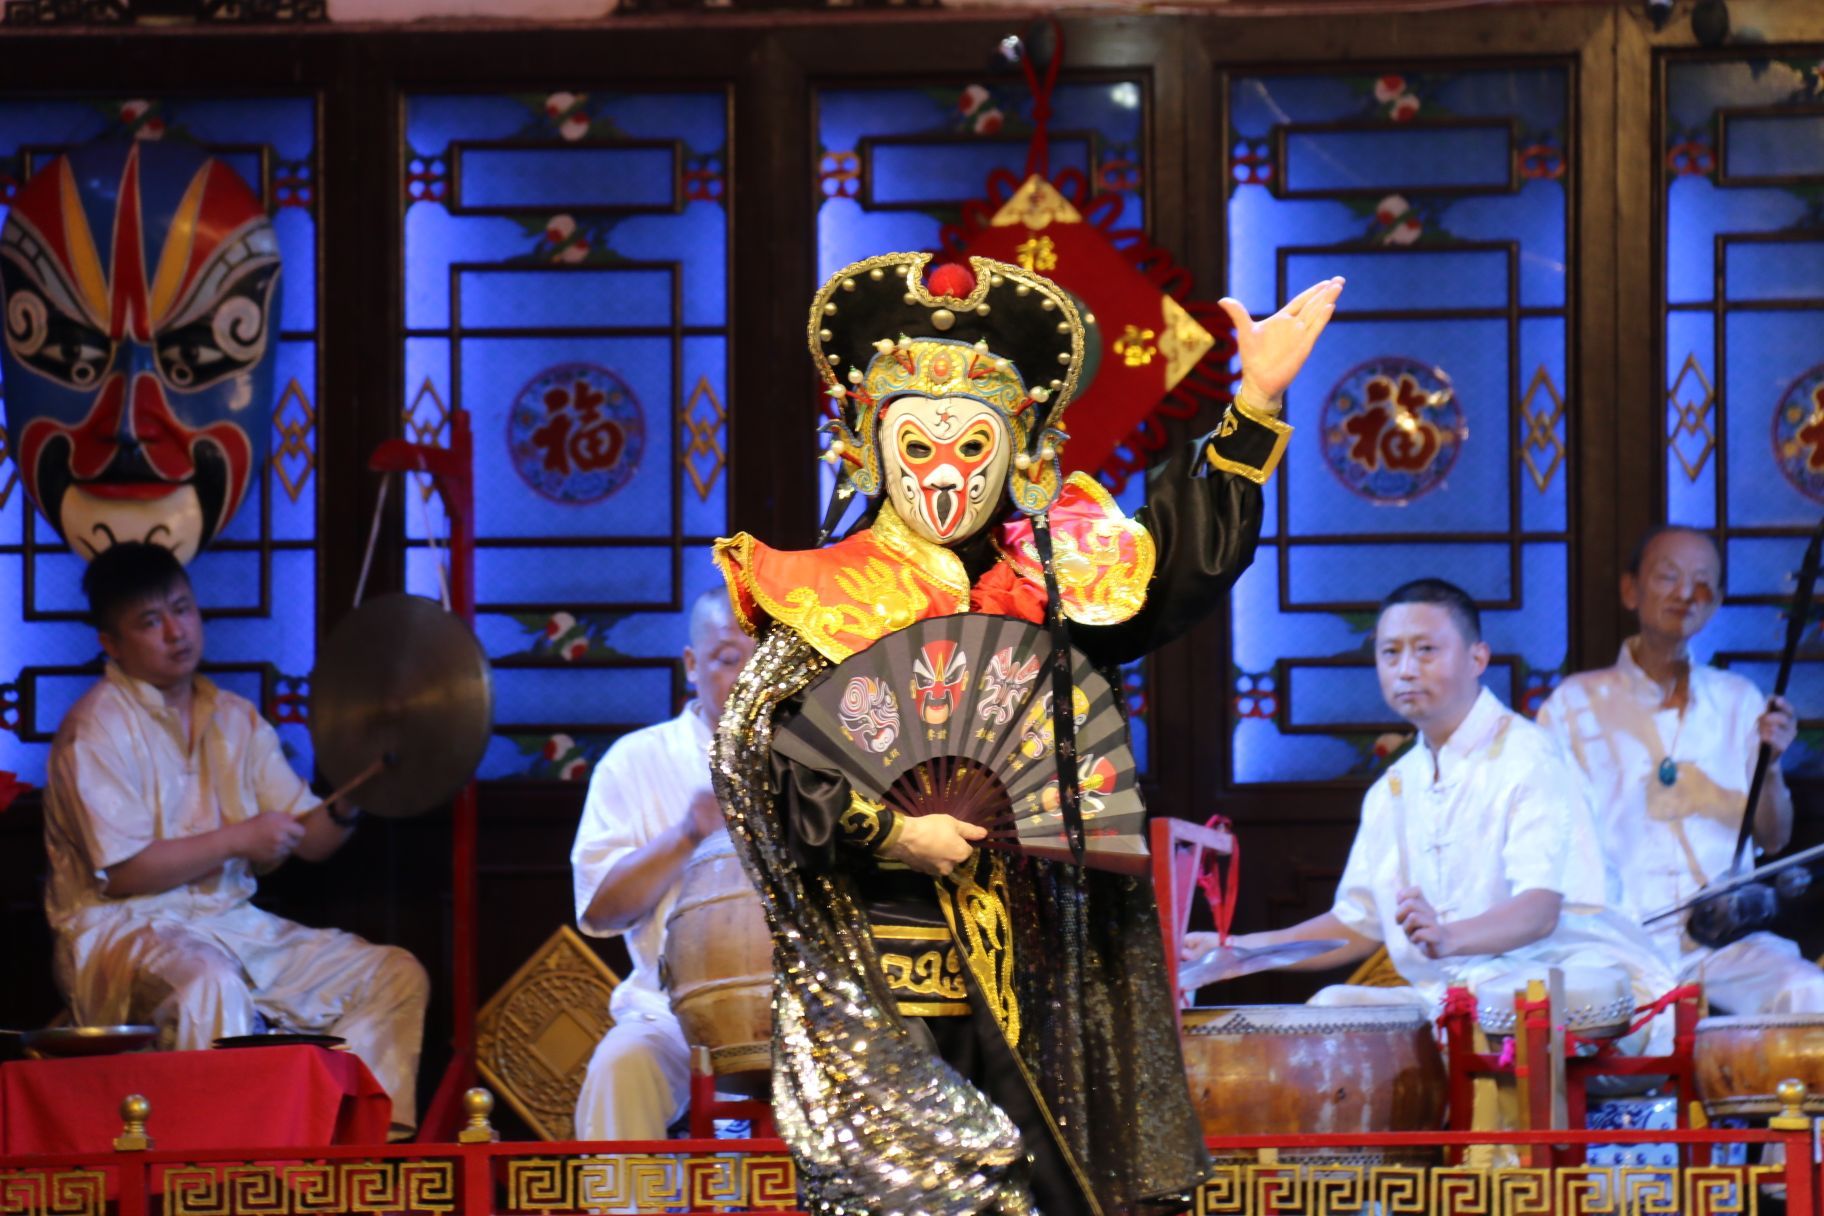 来成都之前一直期待看传统川剧，川剧是四川文化的象征，来到成都，看一场地道的川剧表演是不可或缺的民俗文